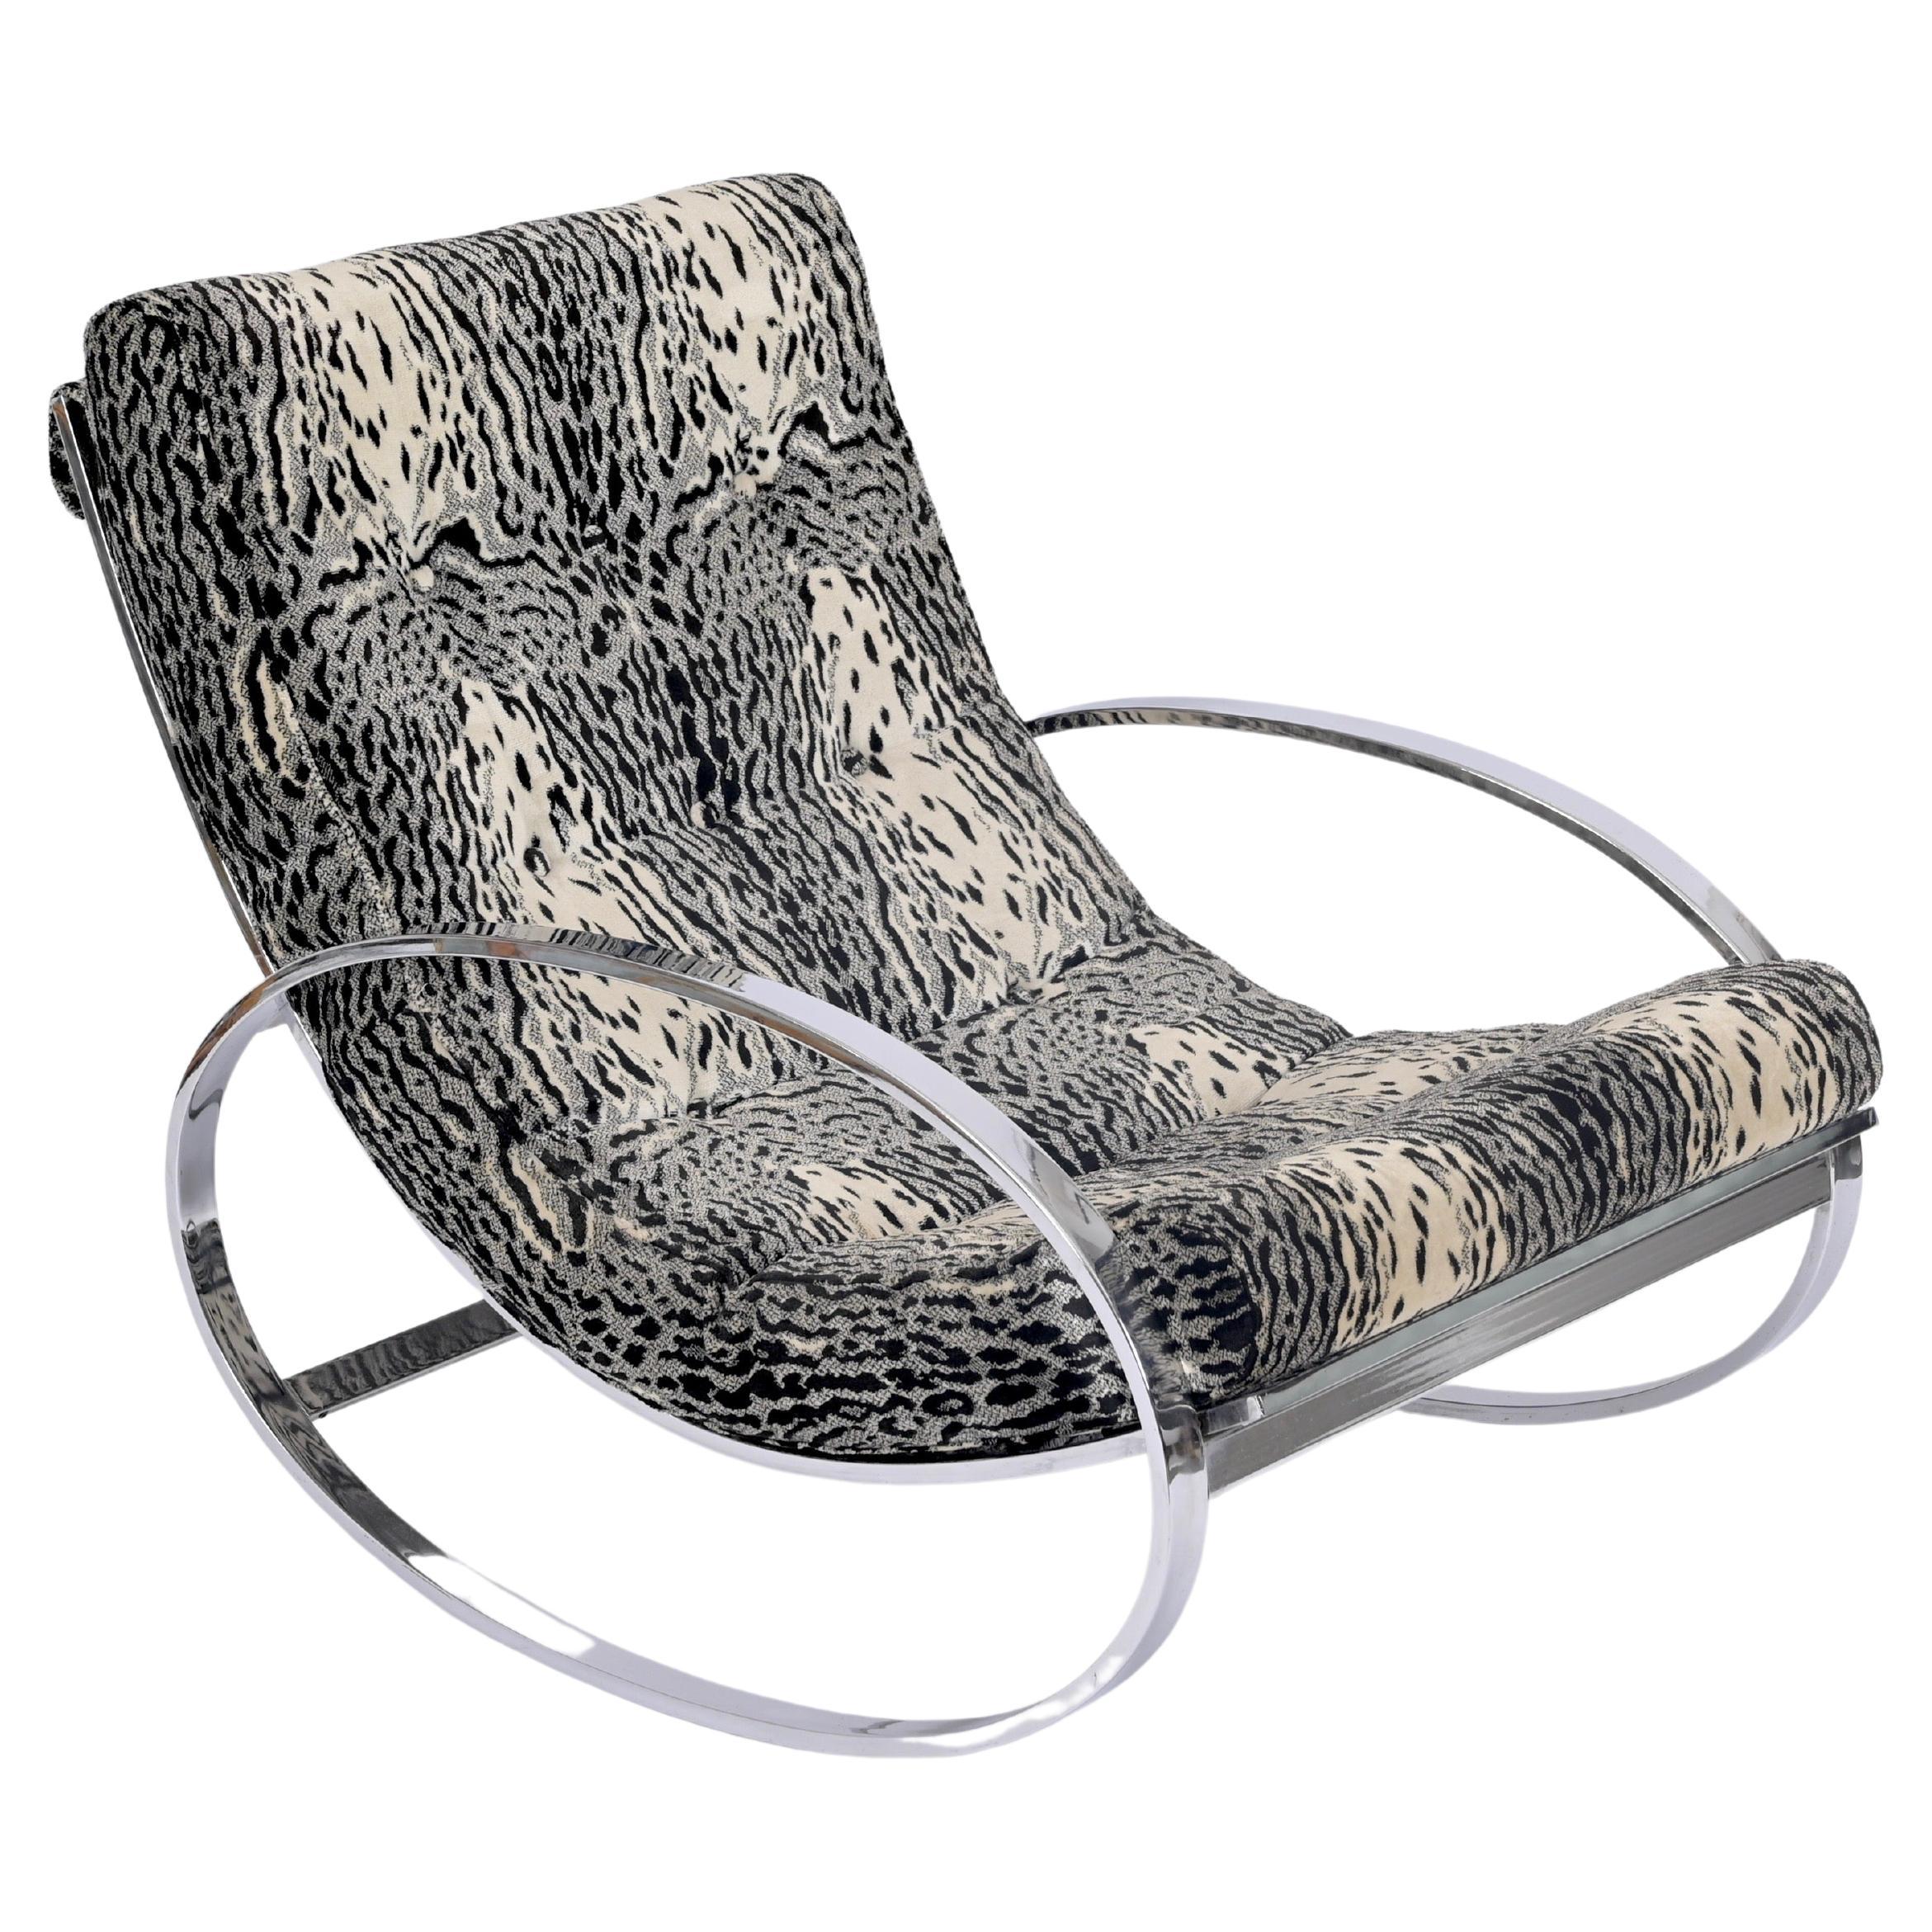 Renato Zevi "Ellipse" Lounge Chair in Chrome and Velvet, Selig, Italy 1970s For Sale